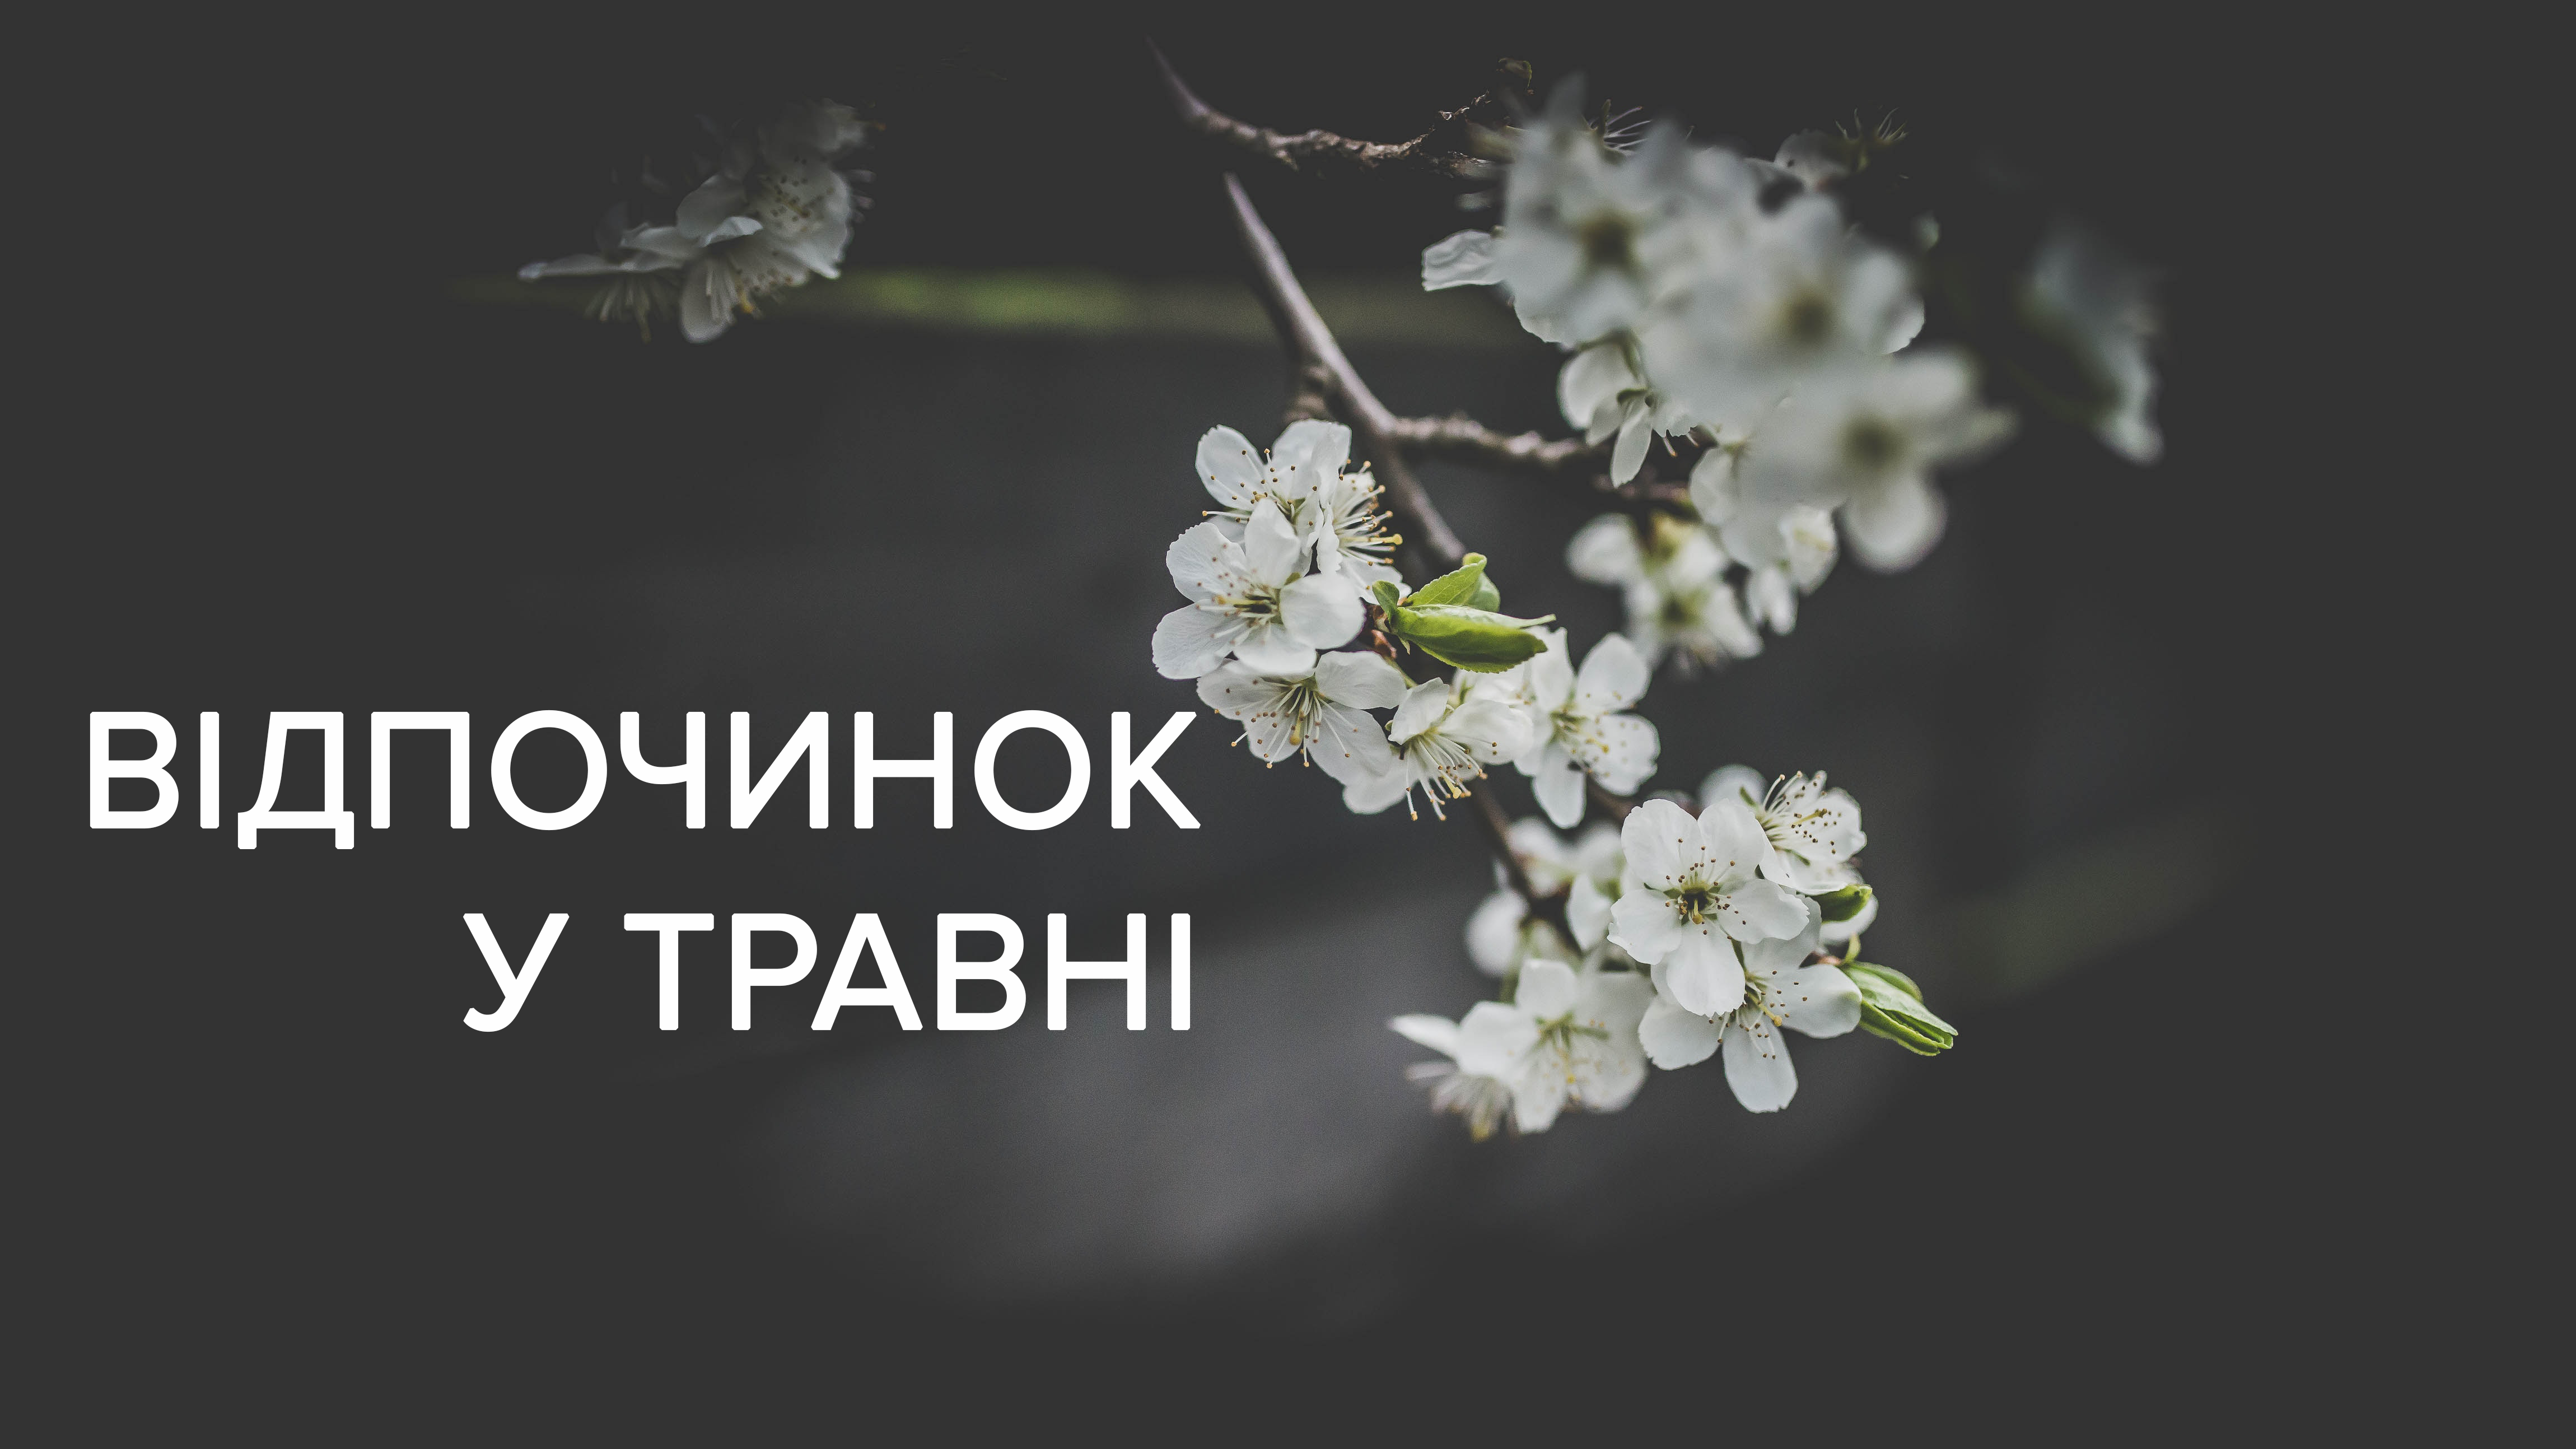 Вихідні у травні 2019 Україна на травневі свята - календар свят та вихідних днів